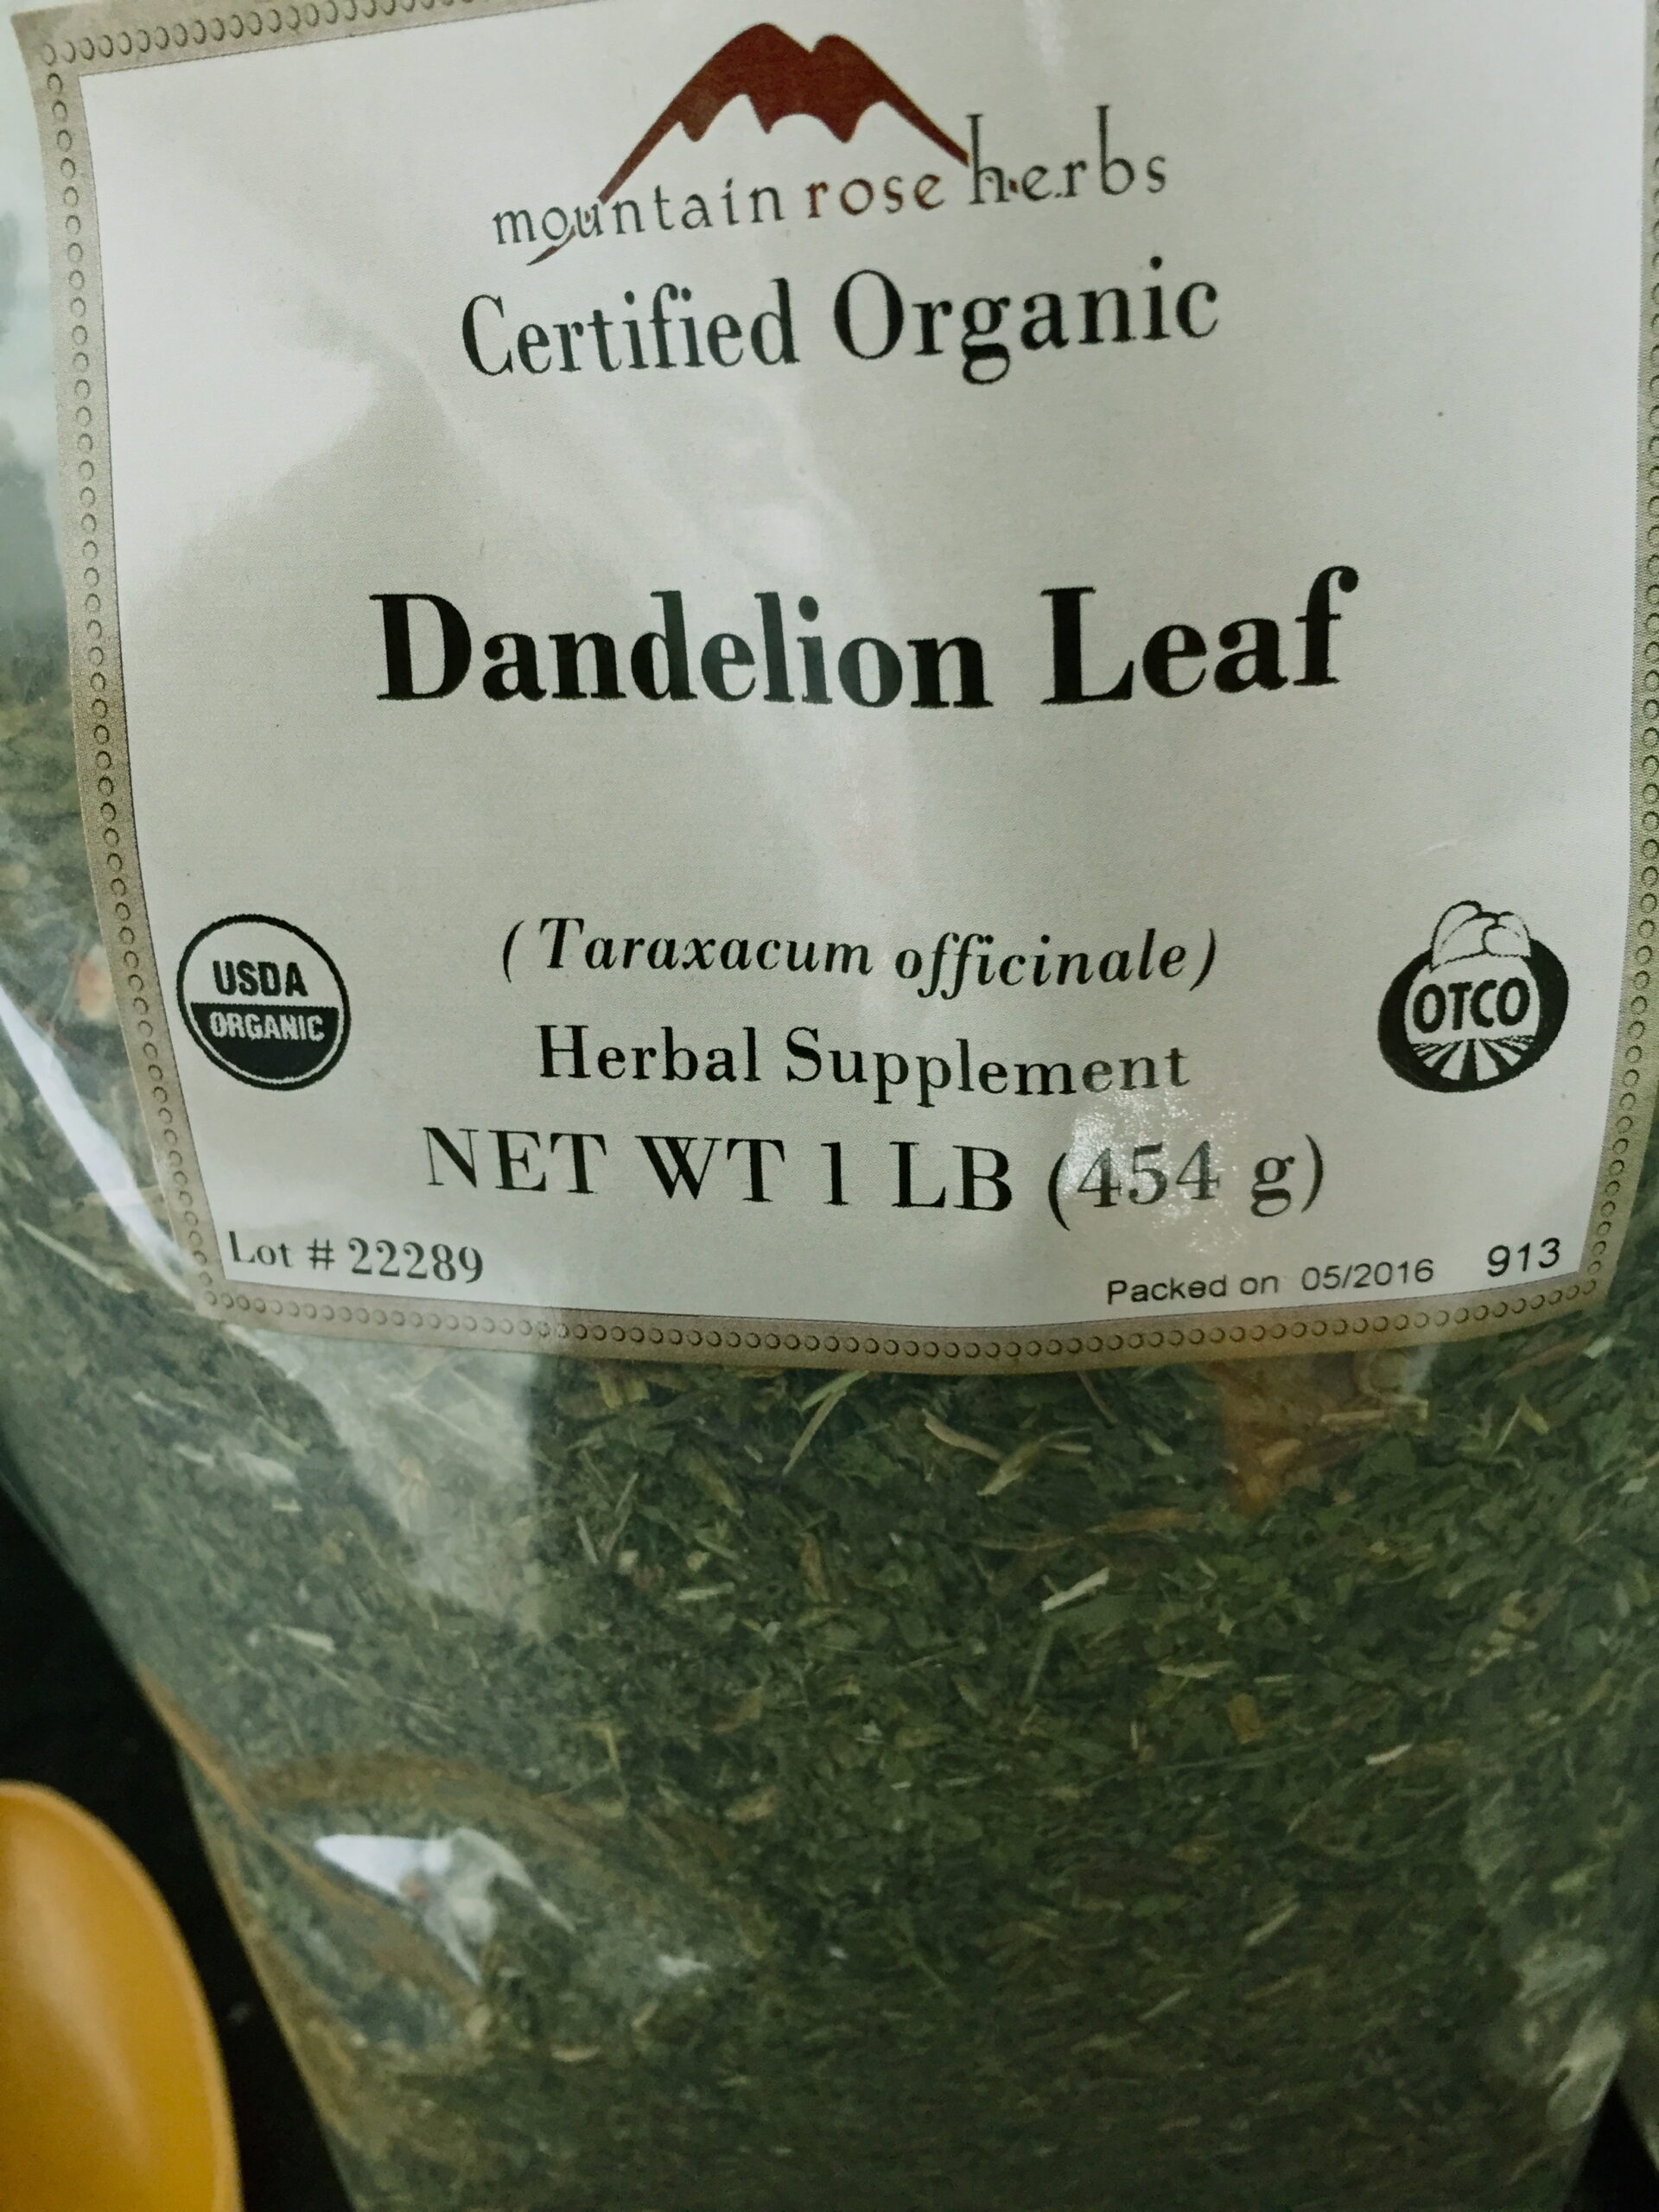 dried dandelion leaf